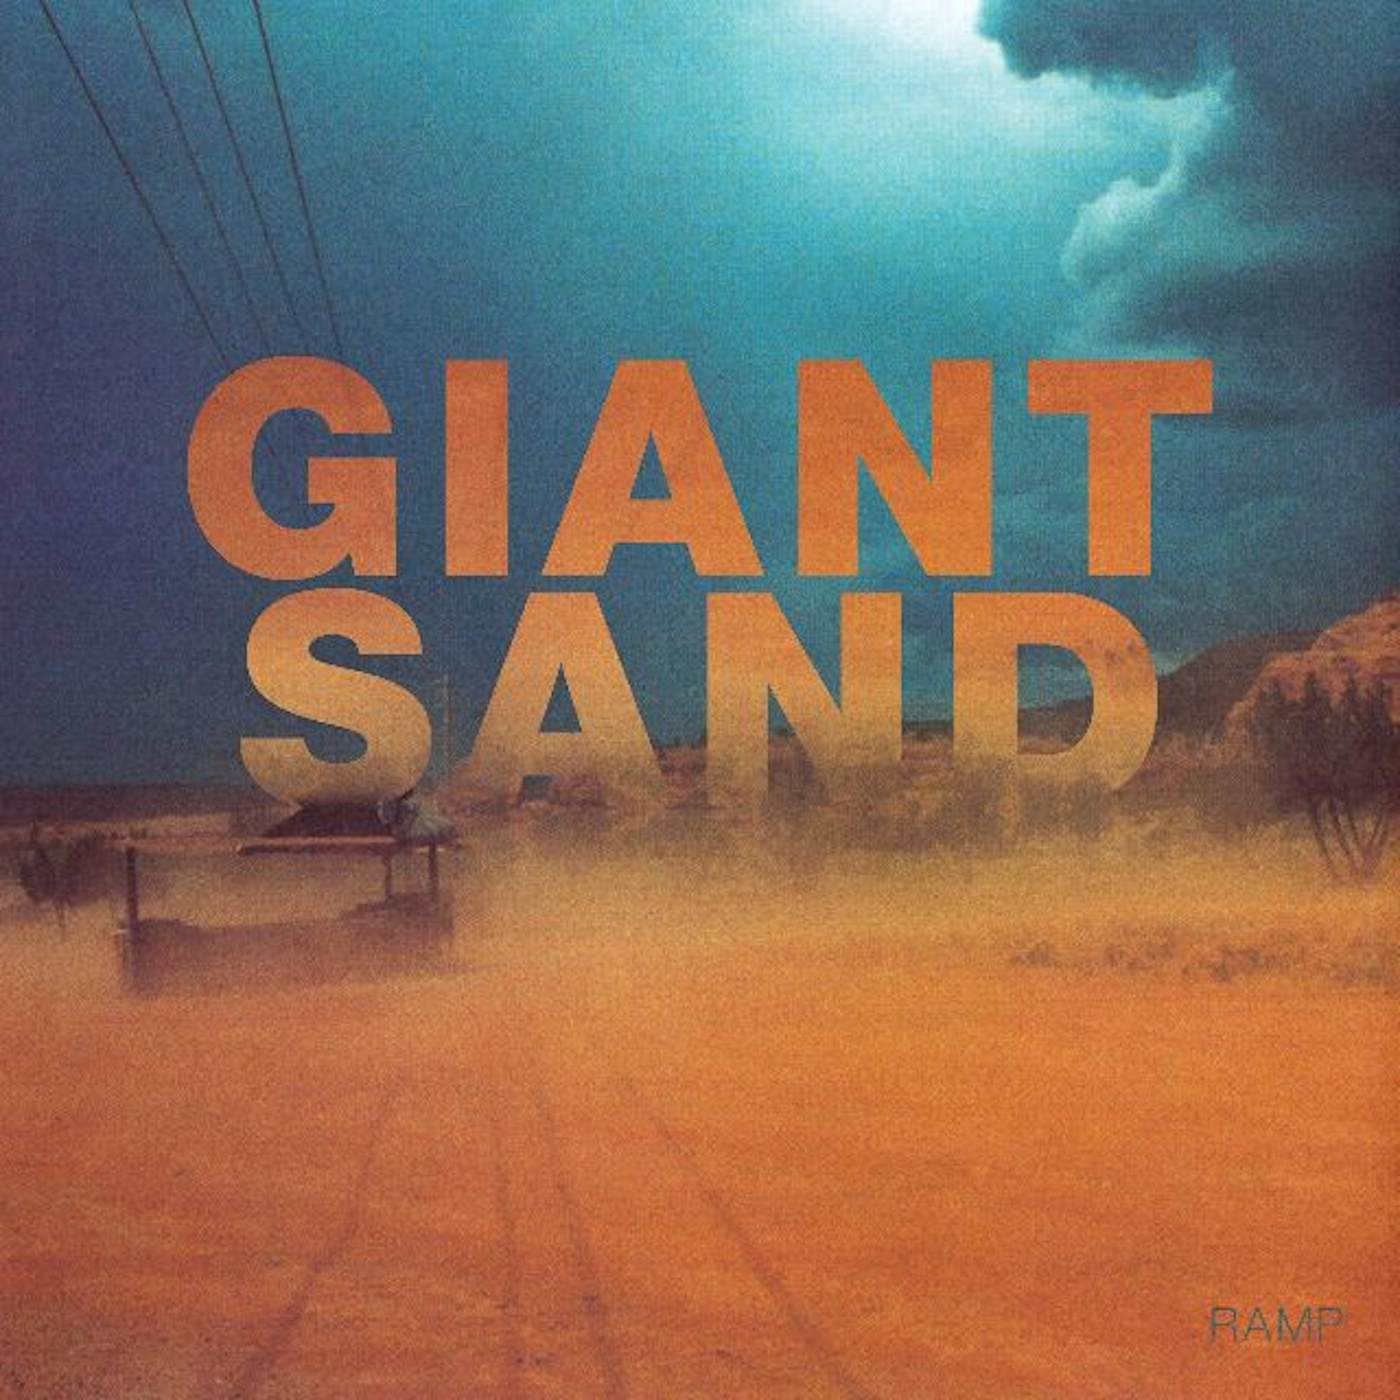 Giant Sand Ramp Vinyl Record